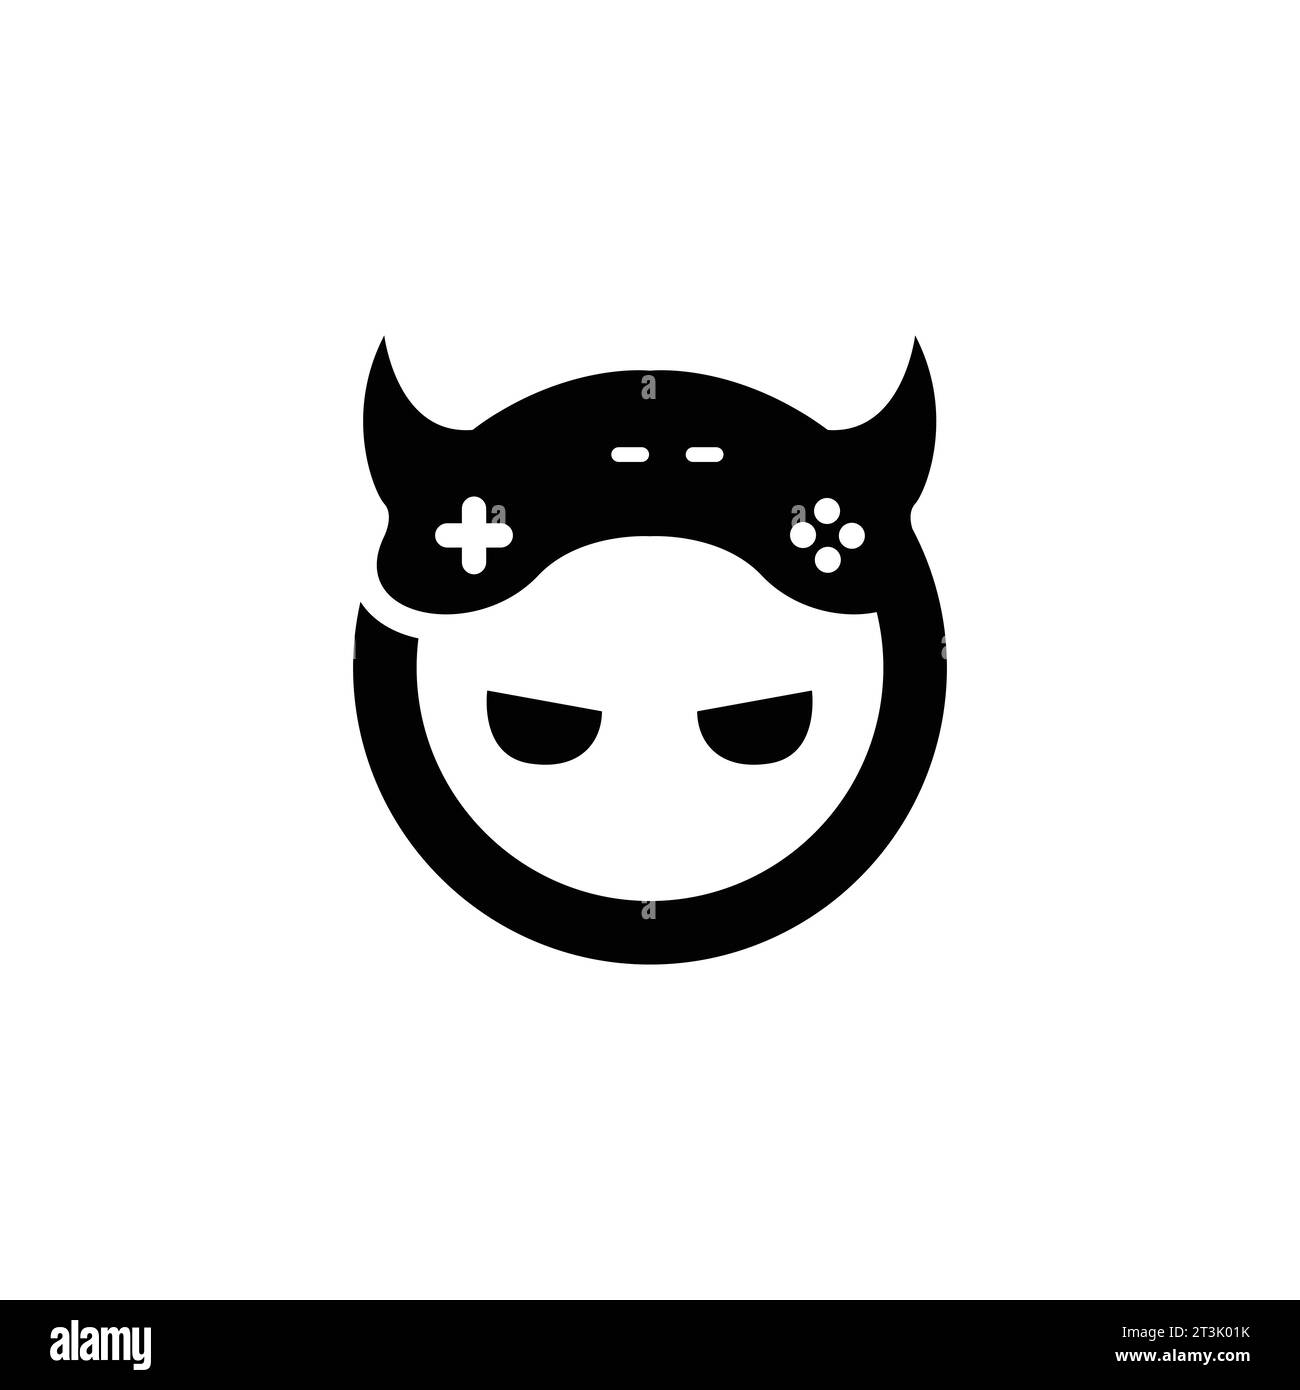 Vektorbild des Devil Game-Logos. Schlichtes, minimalistisches Design mit Joystick-Gamepad-Gaming-Logo Stock Vektor